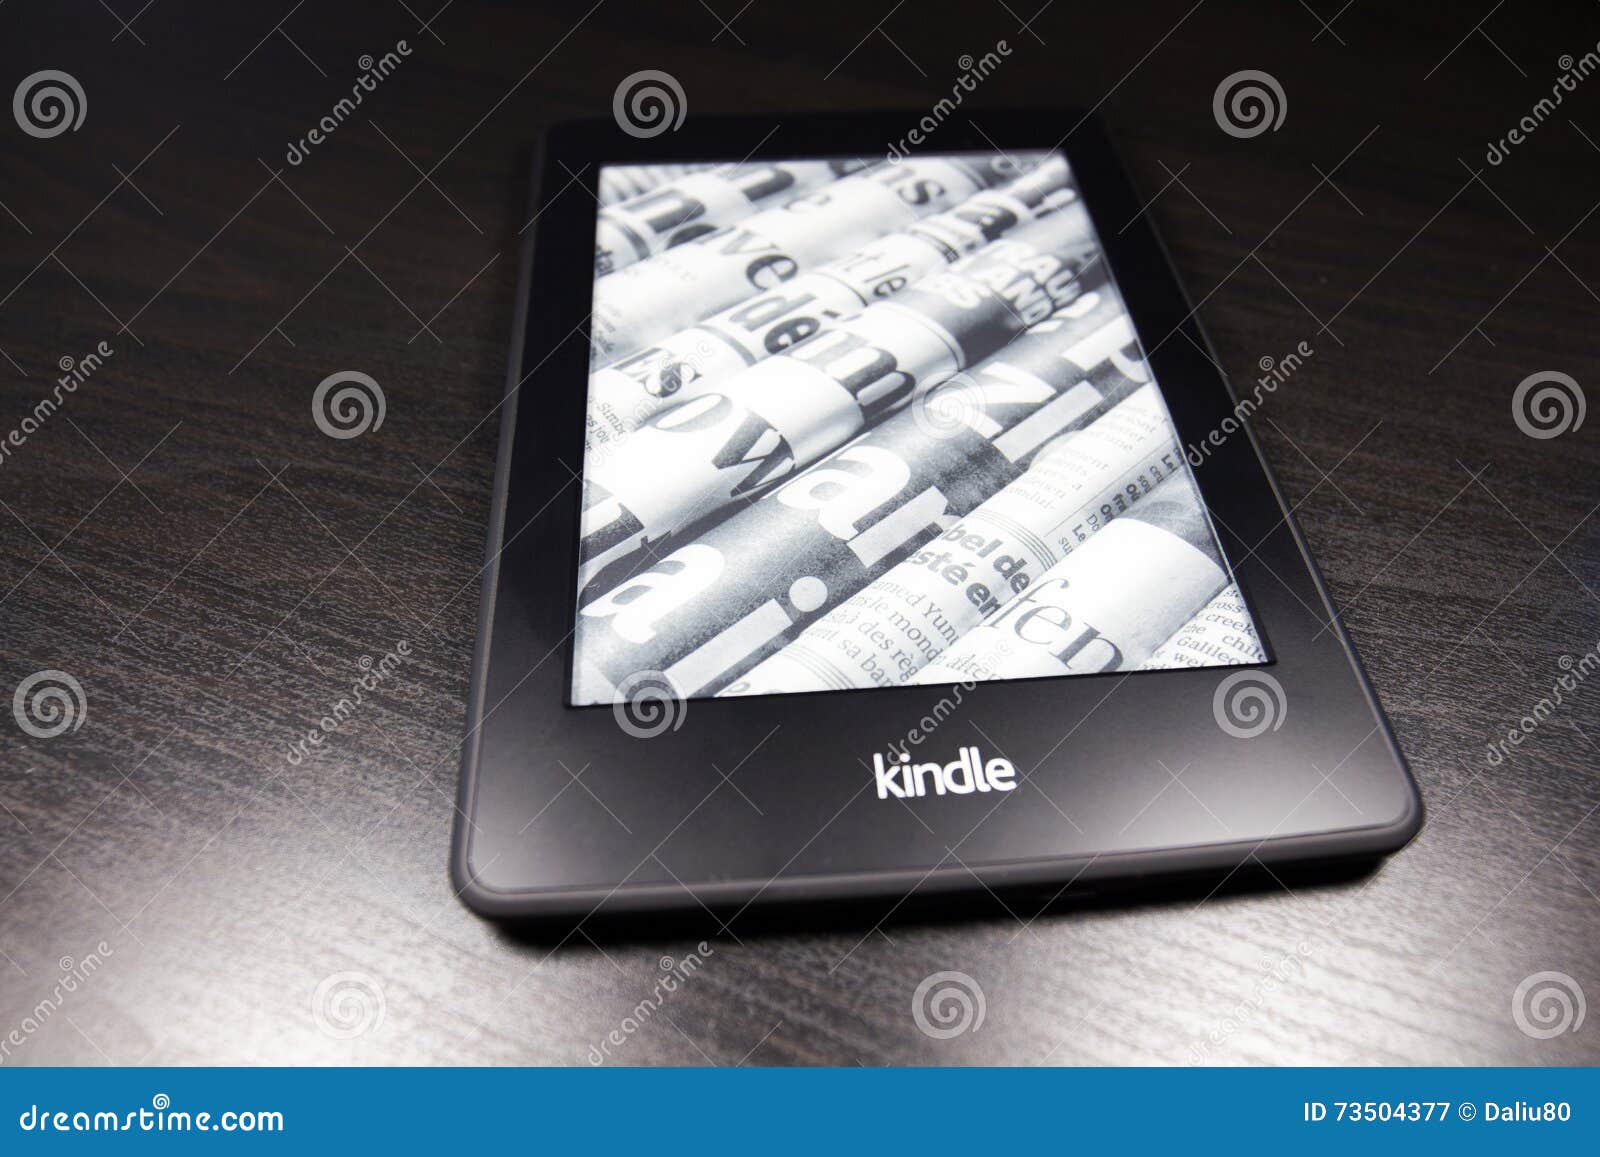 Kindle 4 trên nền đen - một sự kết hợp hoàn hảo giữa thiết kế tối giản và tính năng đặc biệt. Hãy cùng xem ảnh để khám phá nhiều tính năng và thông tin hữu ích về Kindle 4 trên nền đen nào!